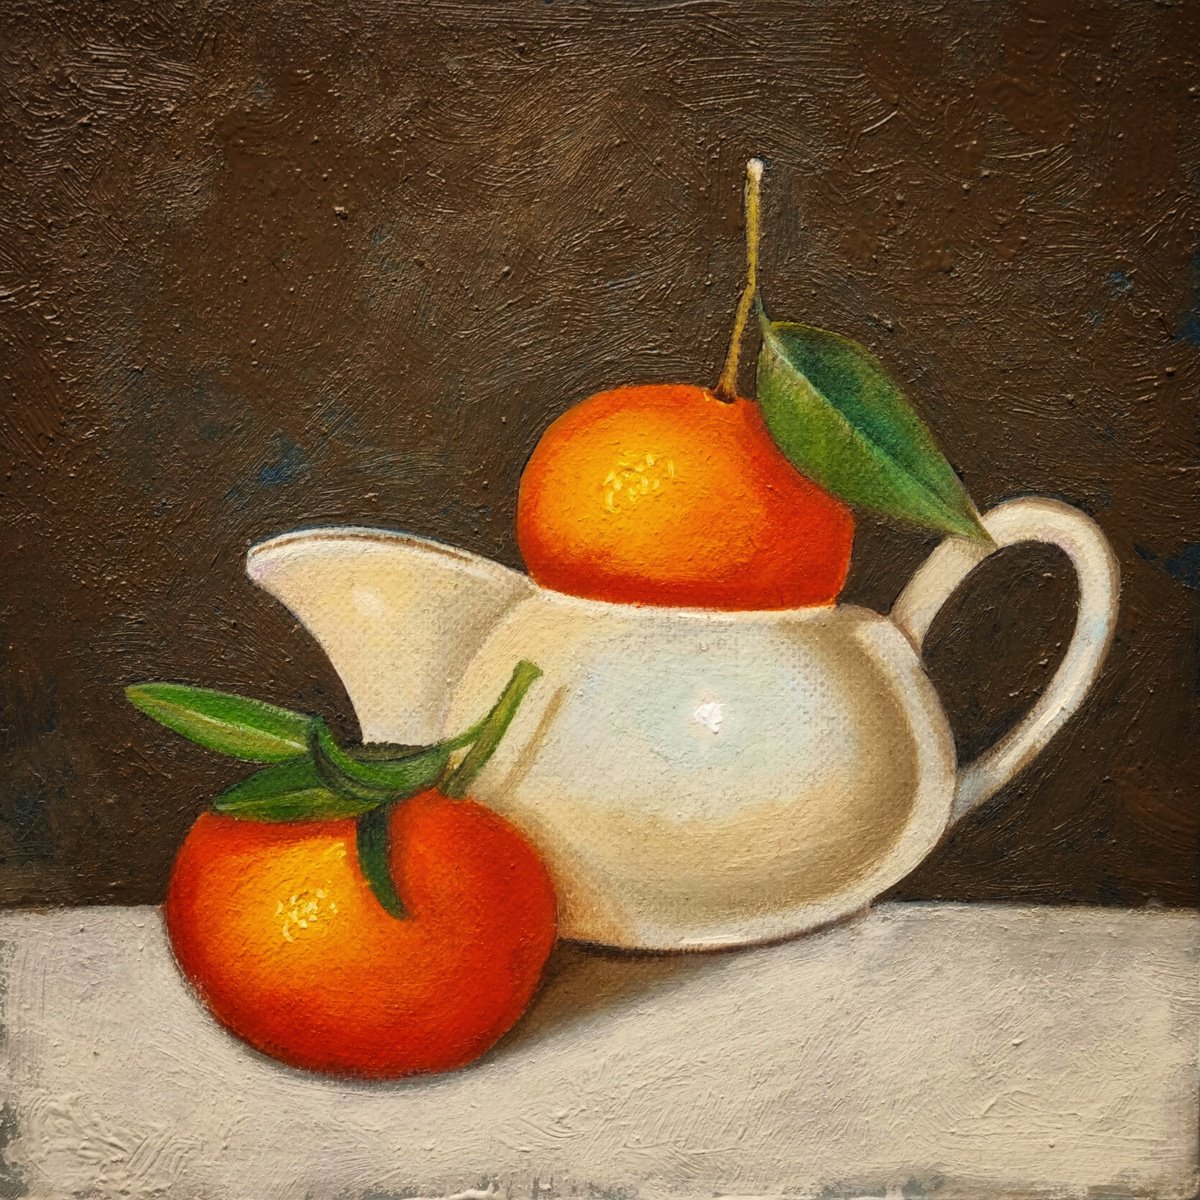 Oranges in Milk jug by Priyanka Singh